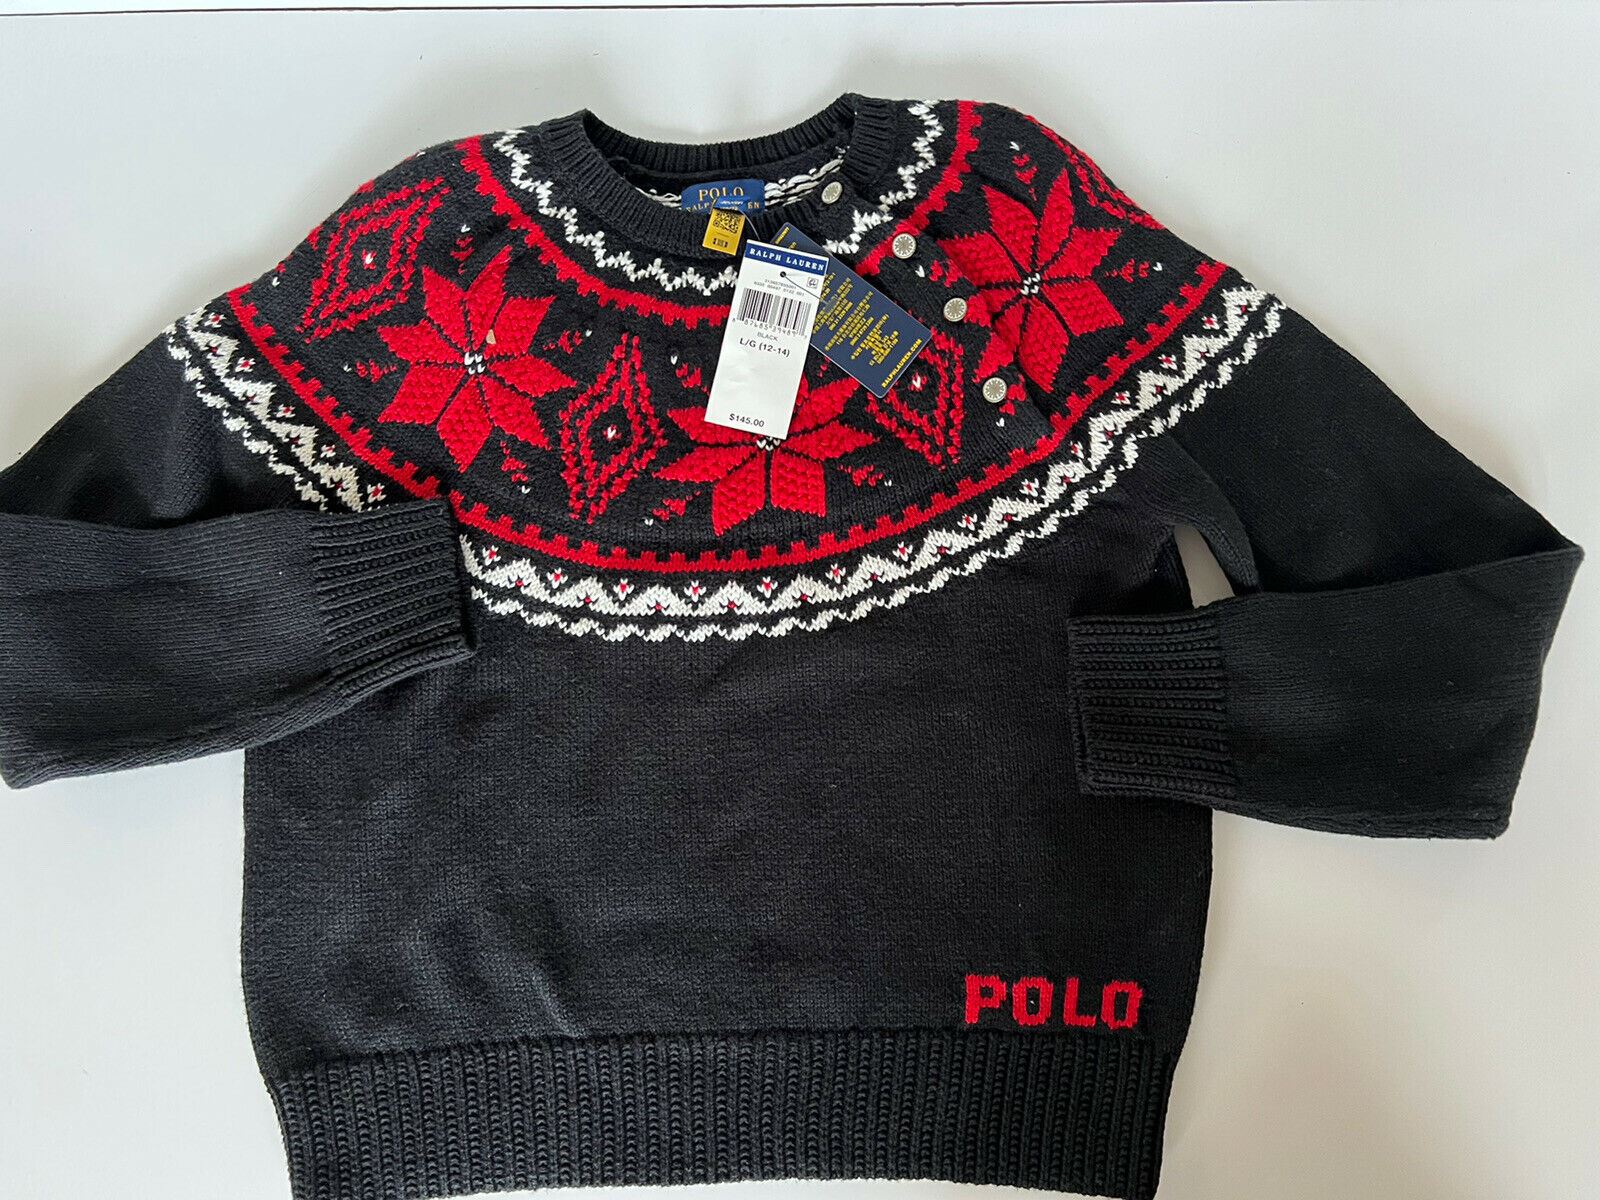 Черный хлопковый свитер для девочек Polo Ralph Lauren Let it Snow, размер L (12–14), NWT 145 долларов США